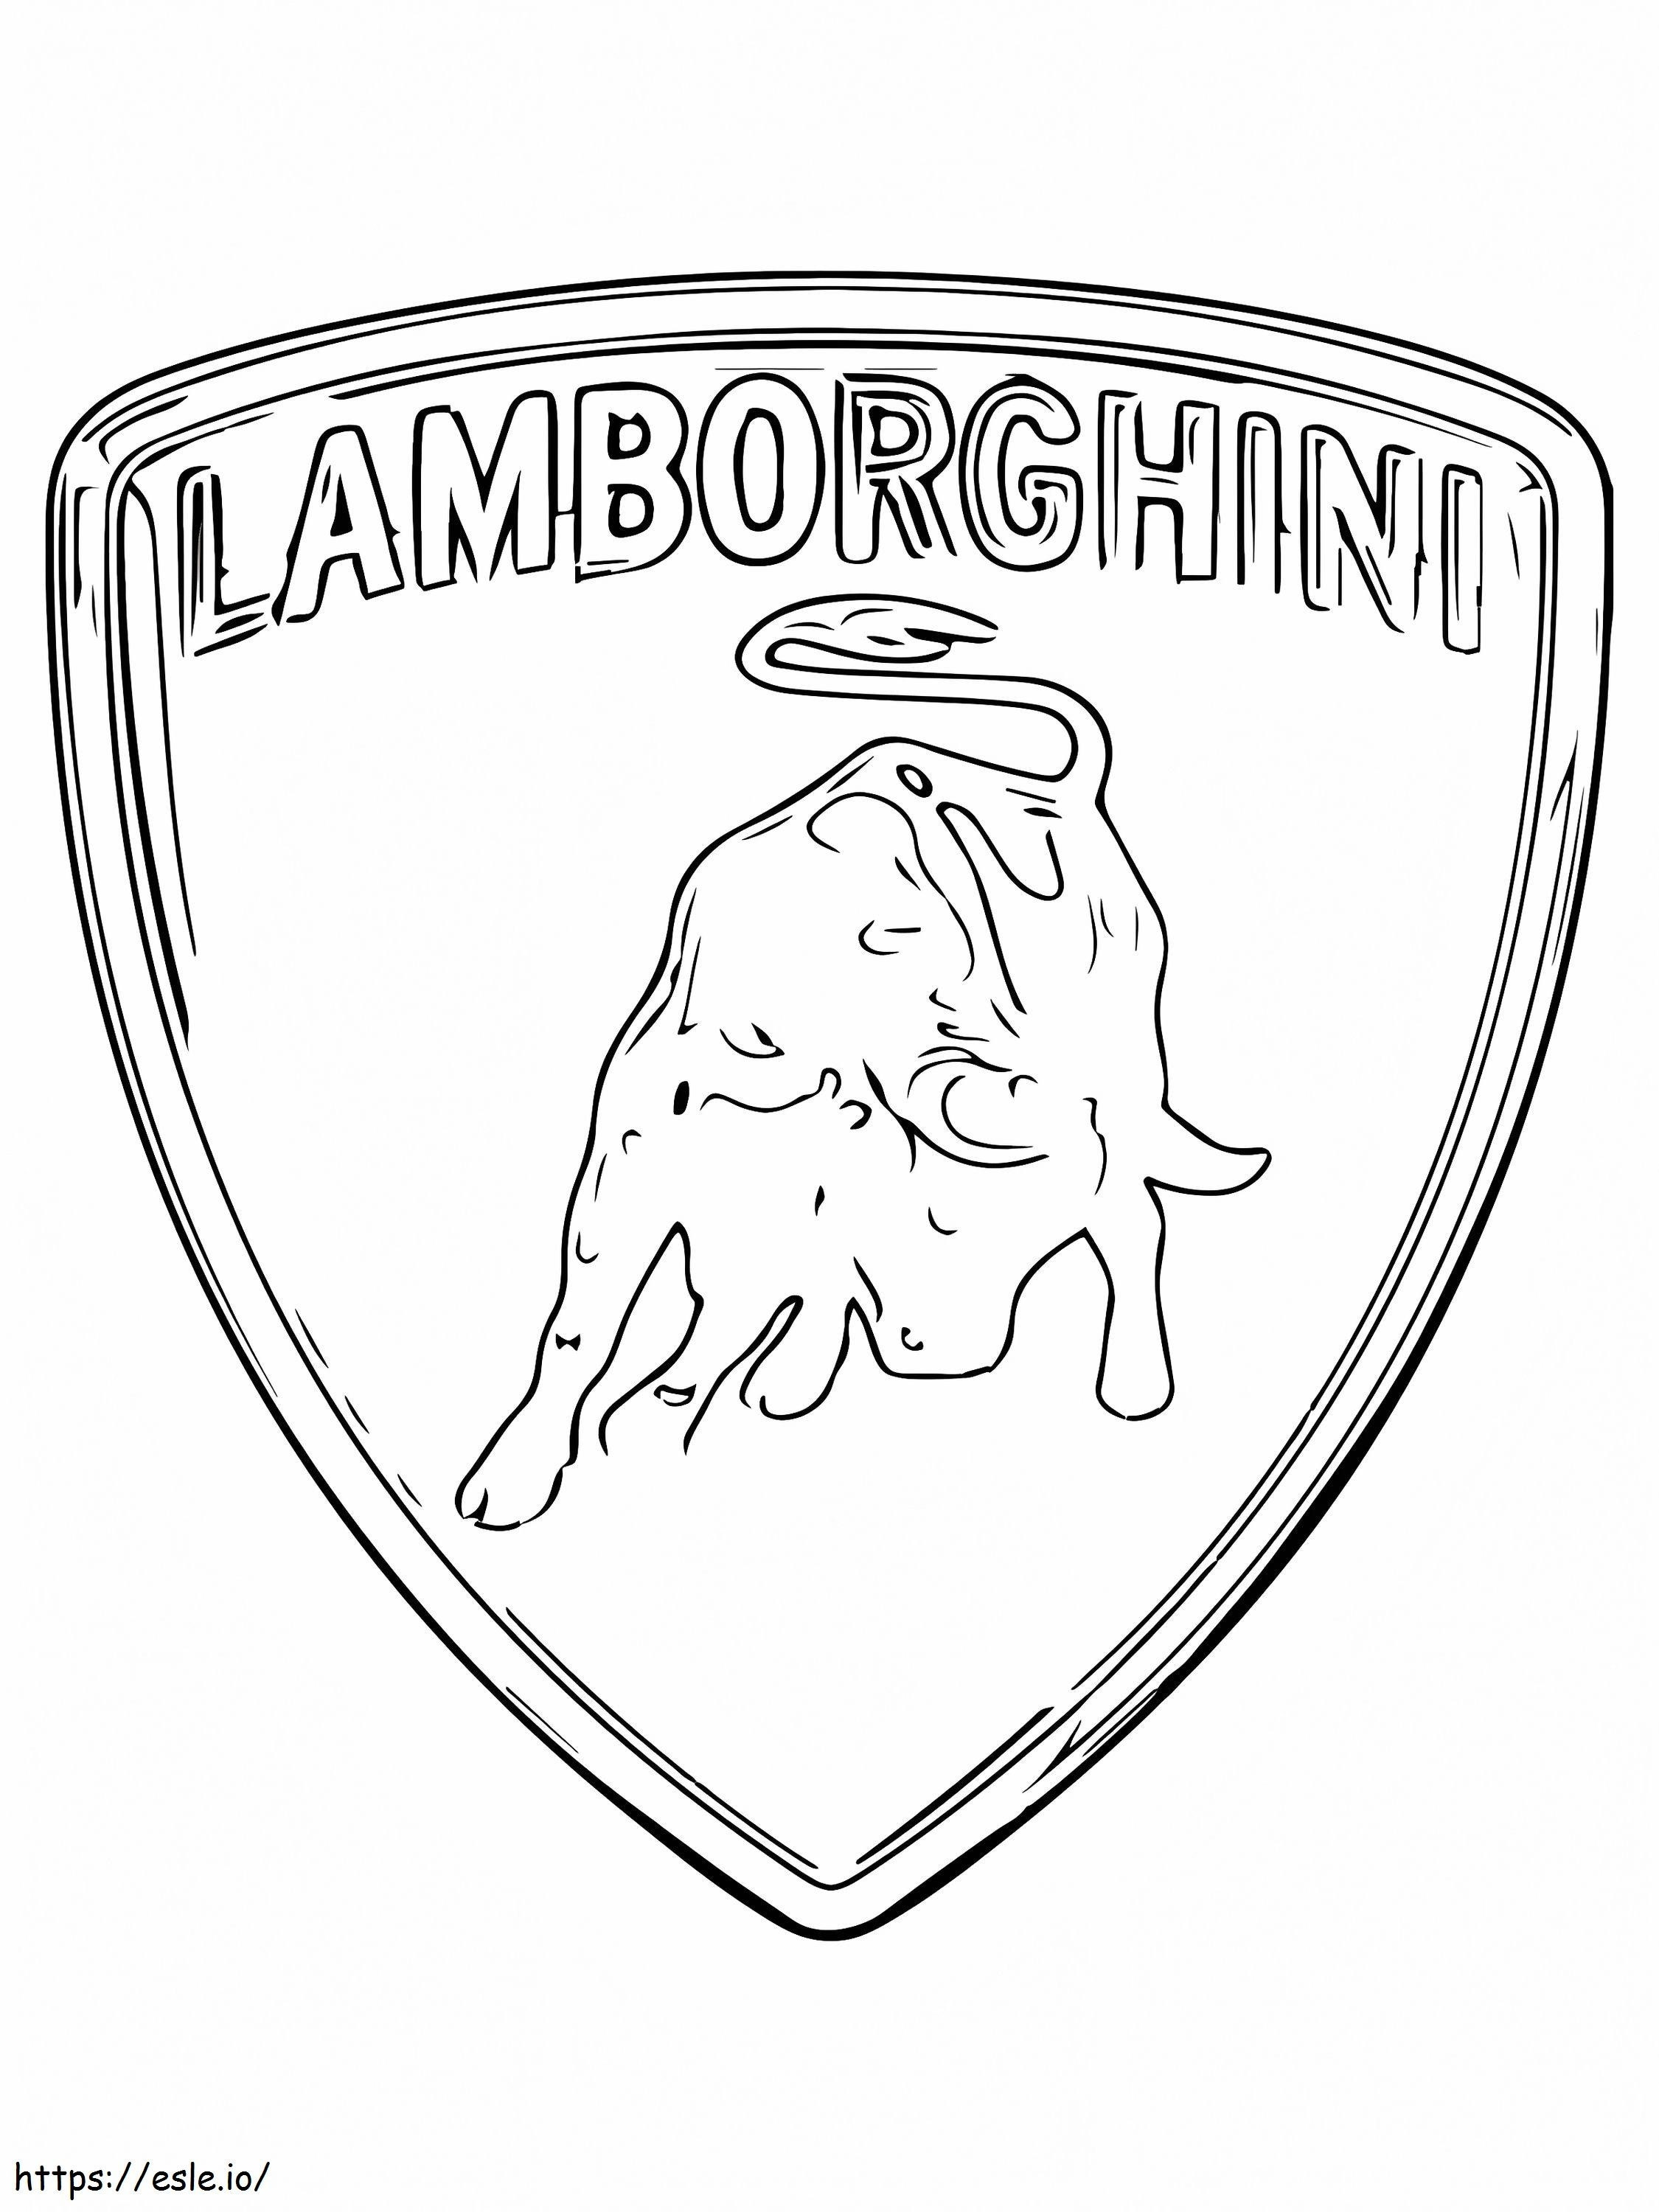 Lamborghini autó logó kifestő